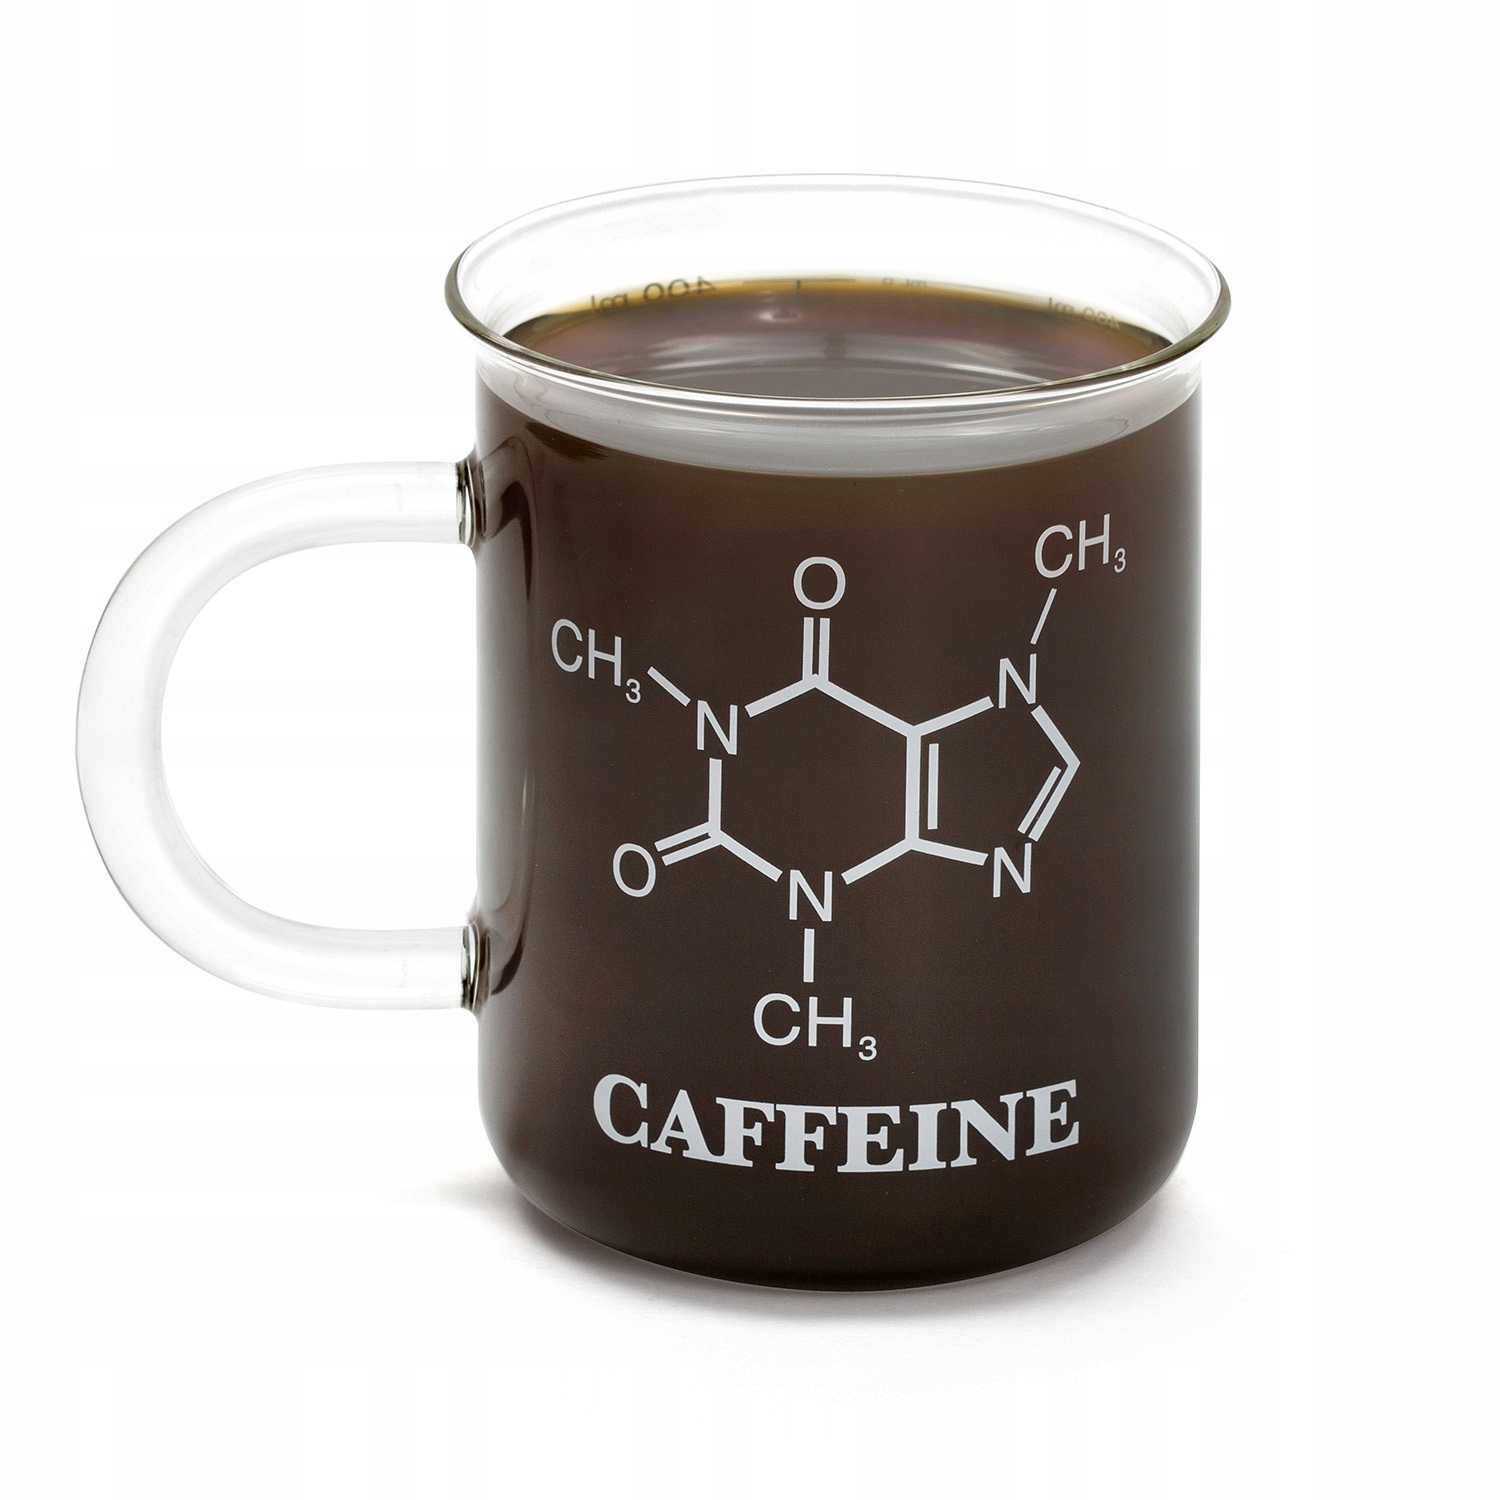 Уже не спасет кофеин. Кружка для химика. Кружки с химическими формулами. Кружка кофеин. Кружка с надписью кофеин.